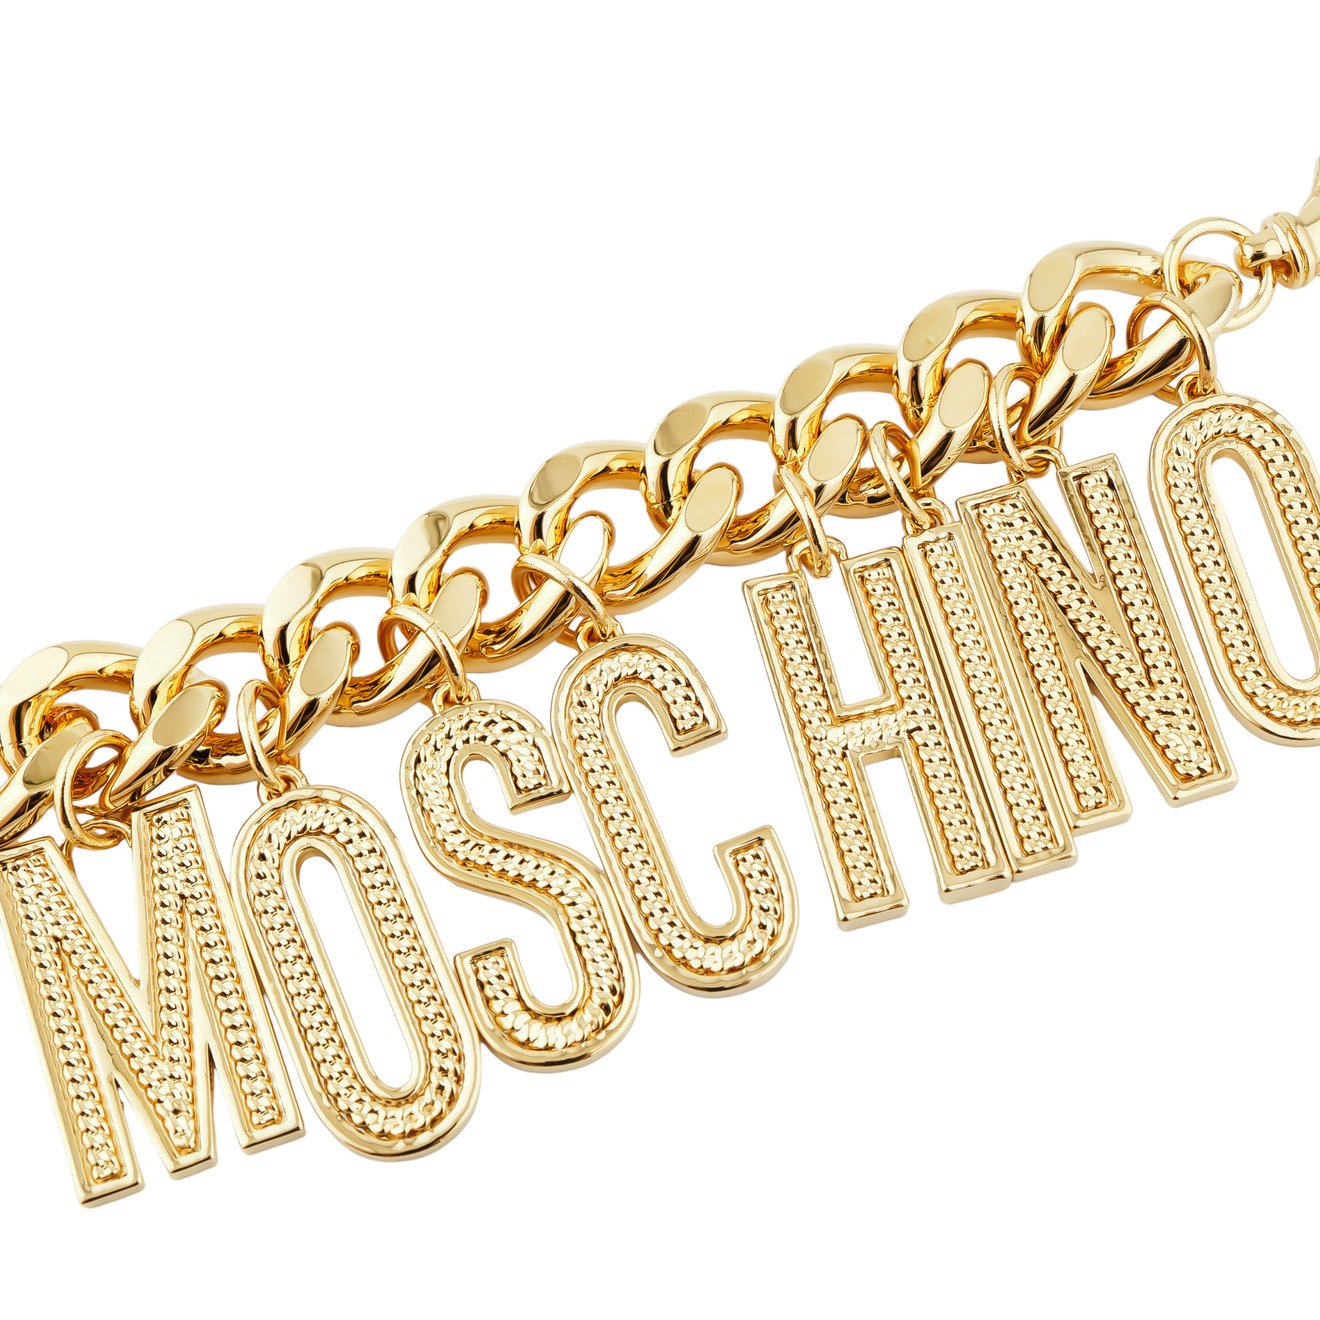 Moschino Позолоченный браслет-цепь с рельефными буквами бренда